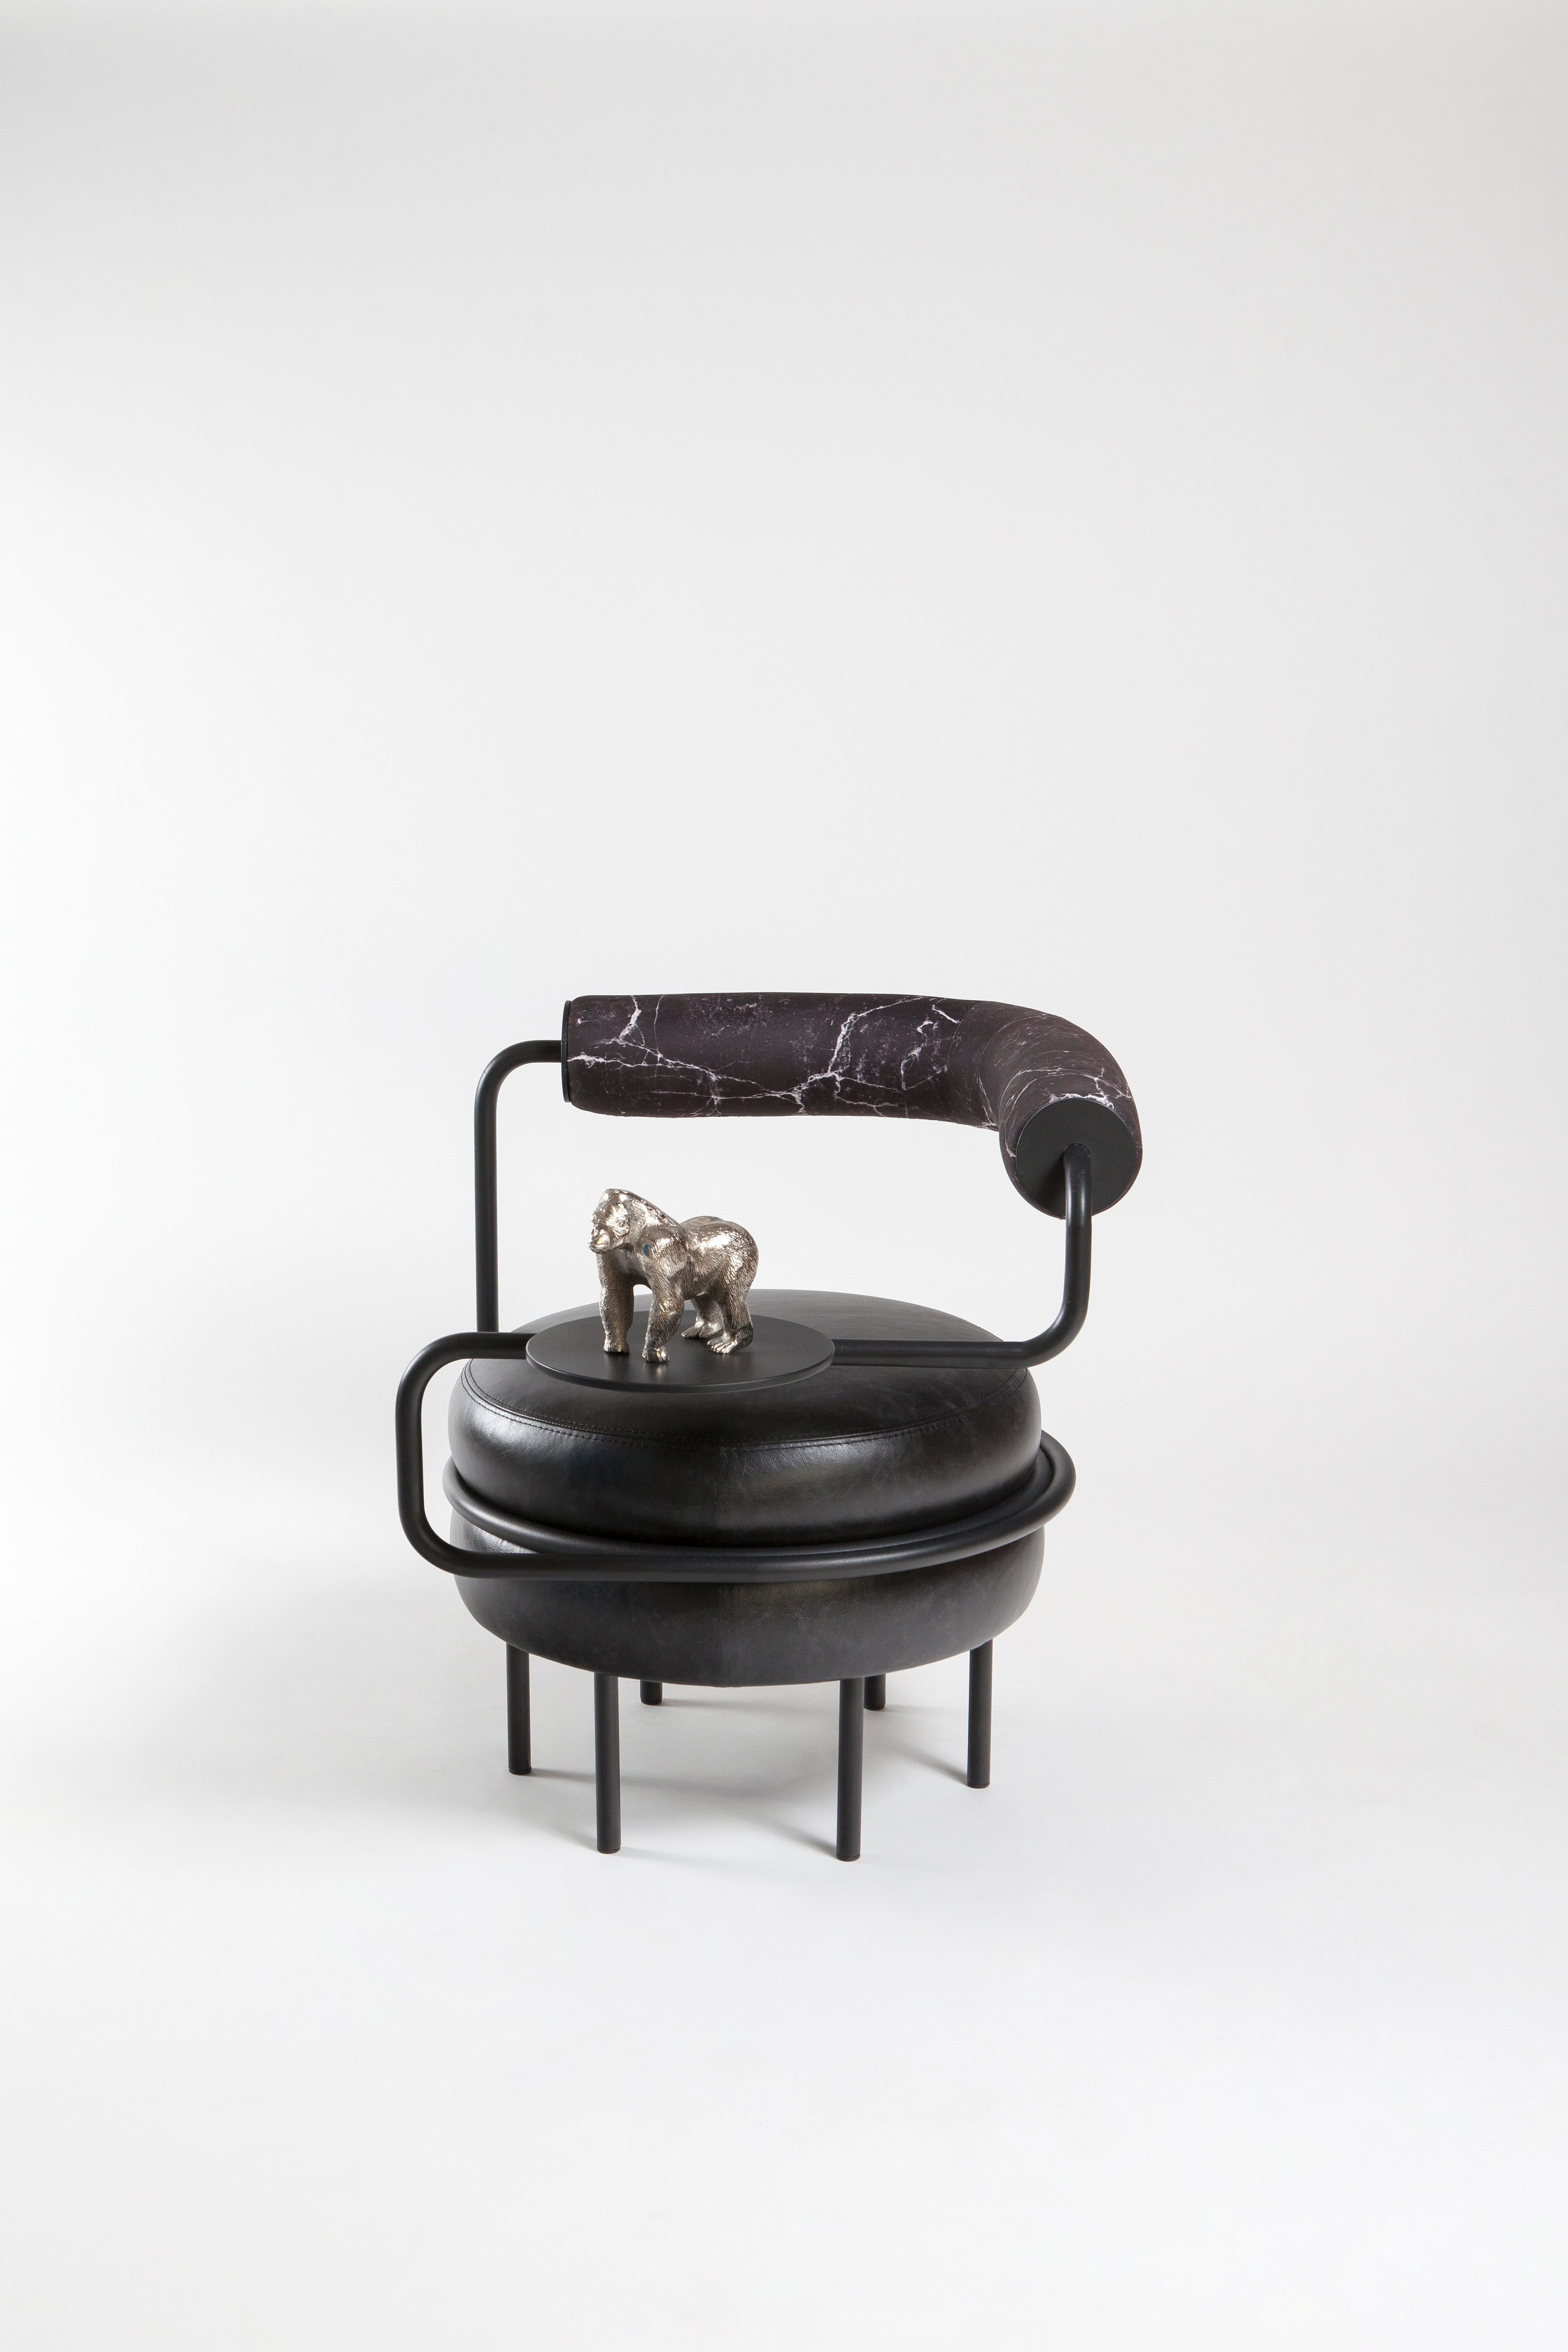 Kontra's Interpretation von Macaron. Bequemer lila Sessel.
Der einarmige Ledersessel bietet eine bequeme Sitzgelegenheit mit einem eigenen Beistelltisch.